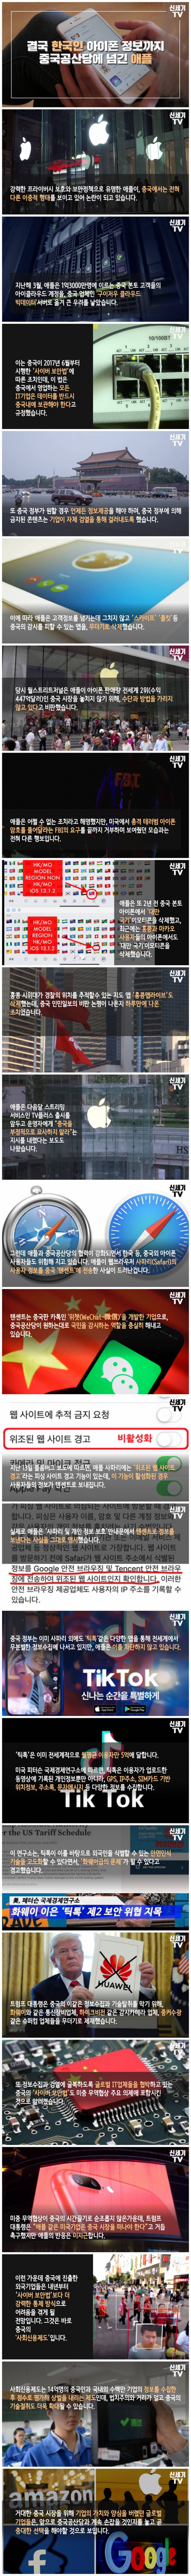 한국인 정보를 중국에 넘긴 애플